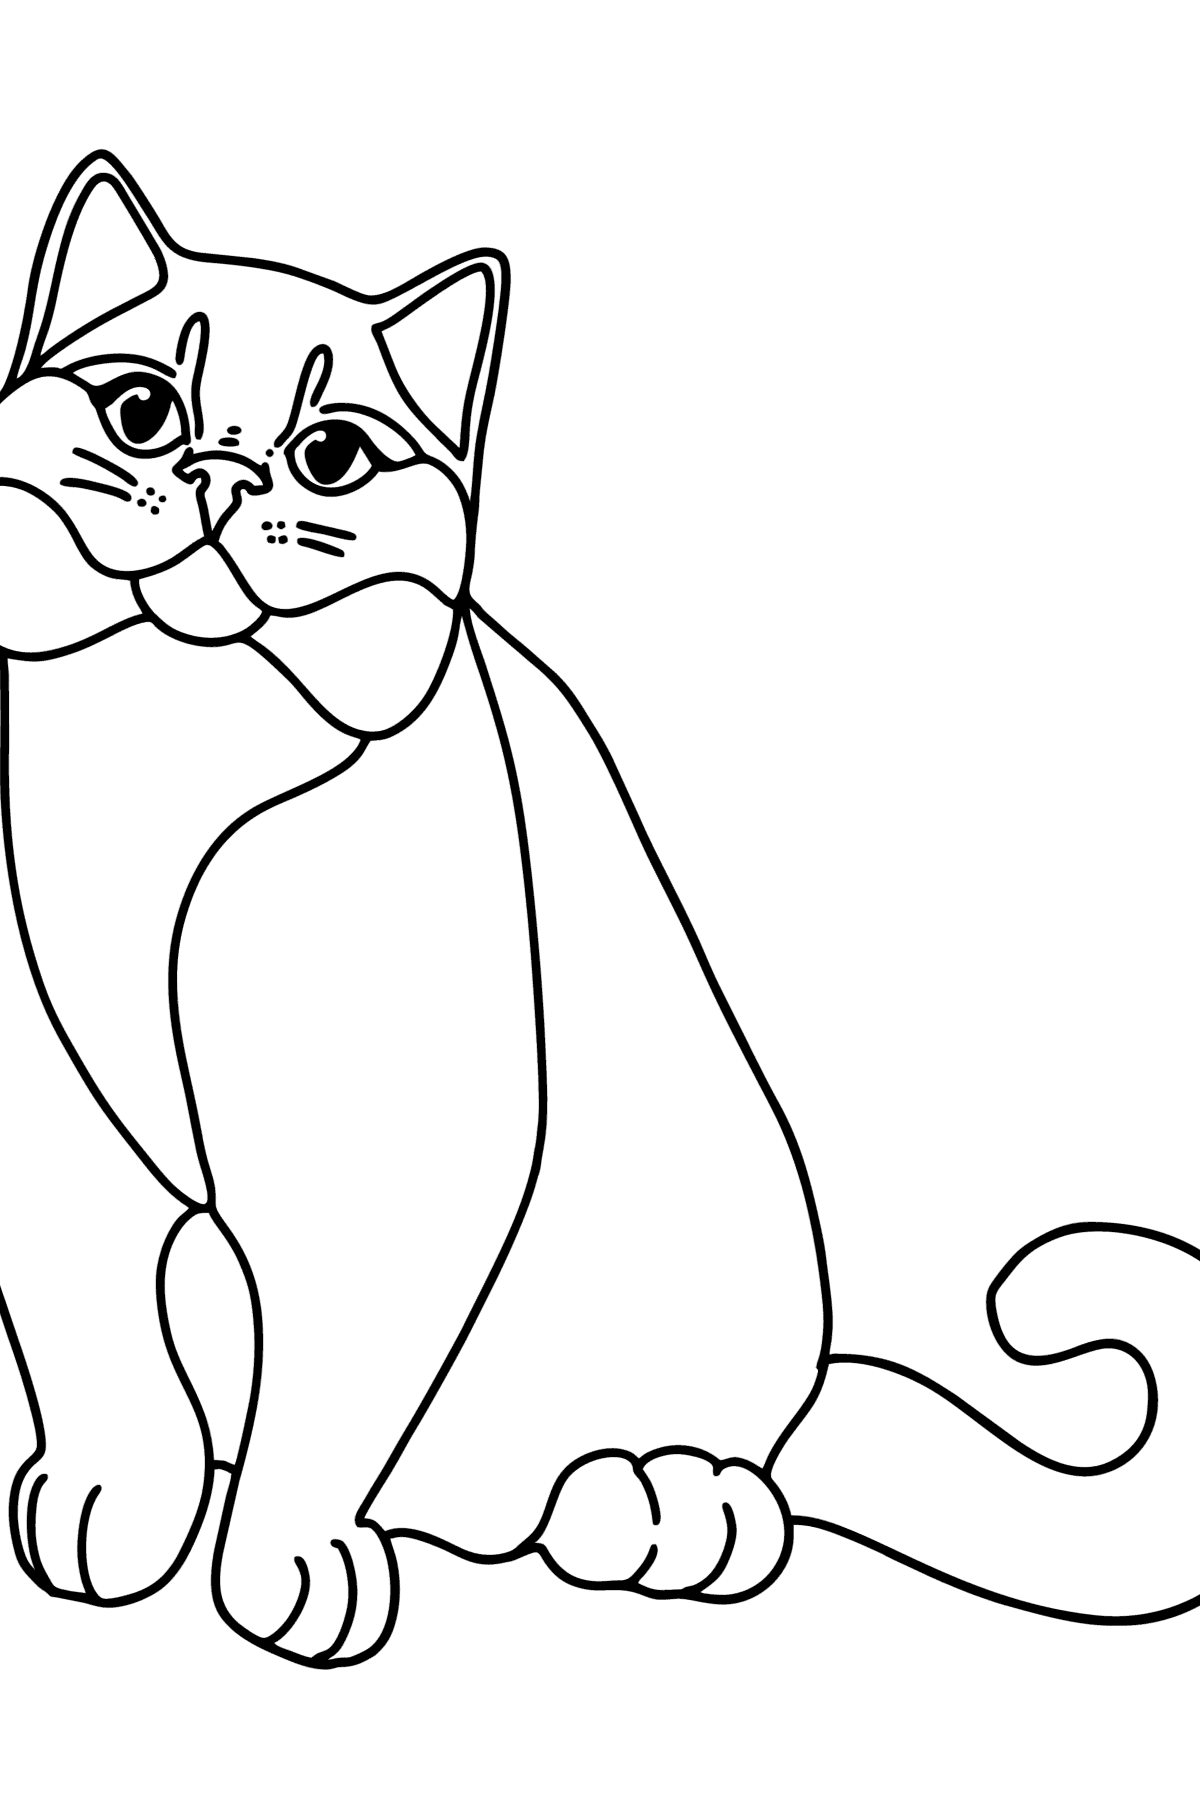 Dibujo de gato británico para colorear - Dibujos para Colorear para Niños